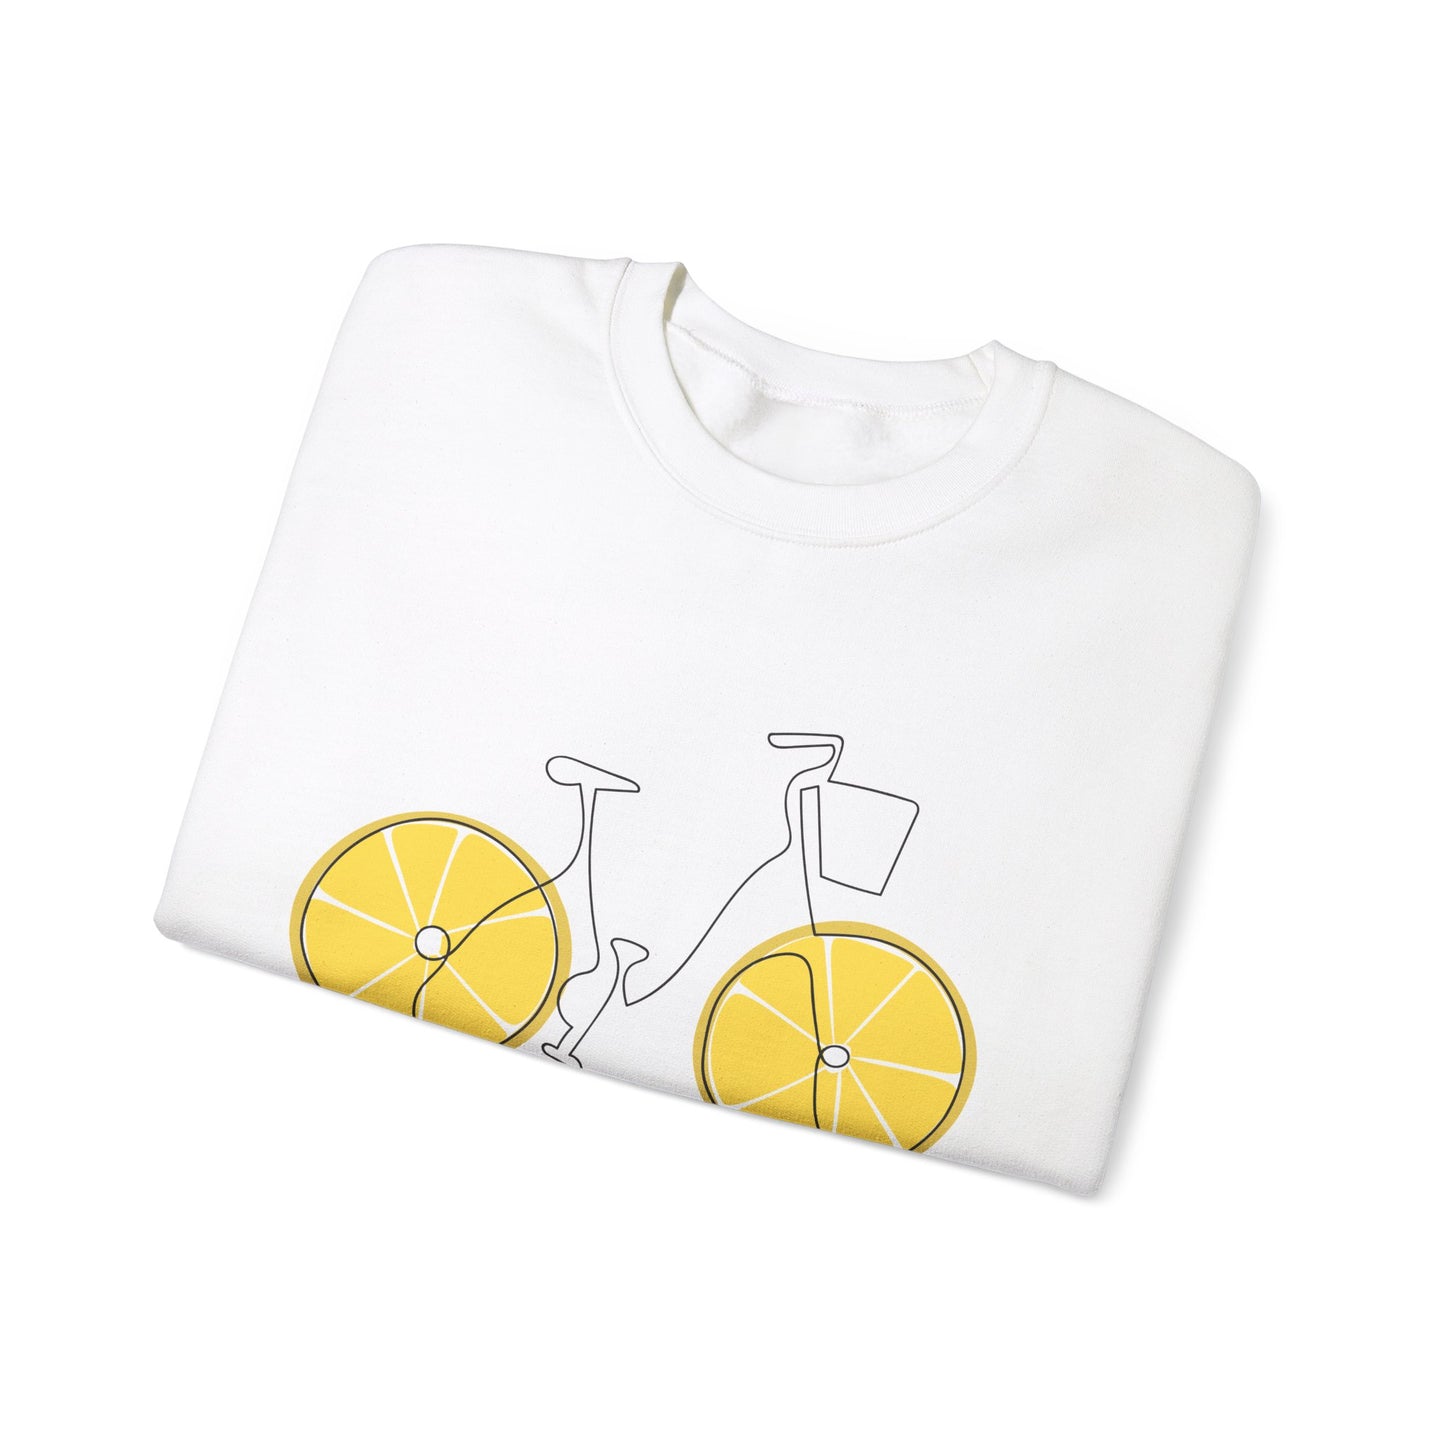 Lemon Bike Sweatshirt Unisex